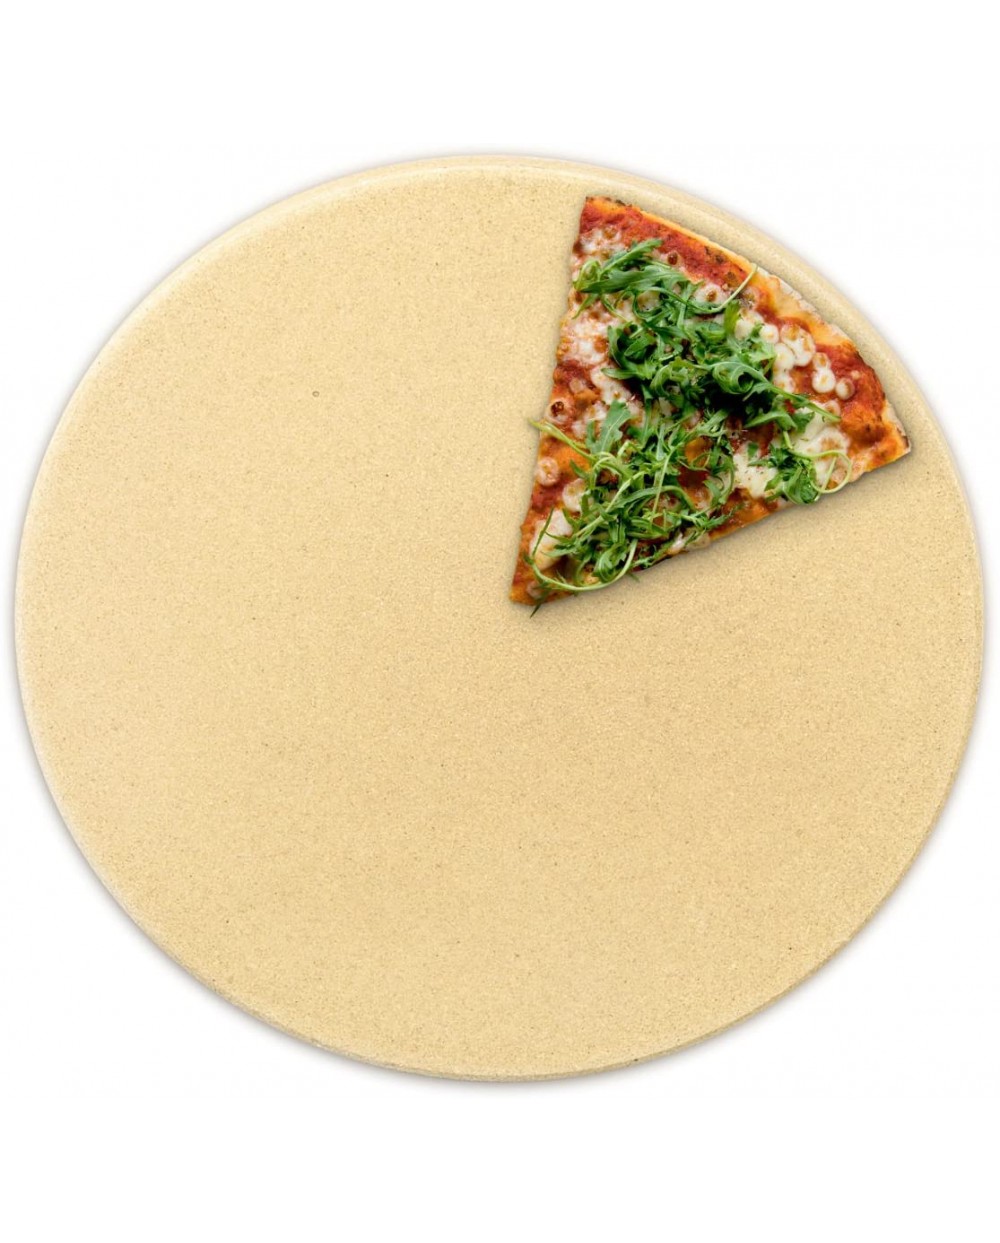 Achat Pierre à pizza réfractaire ronde four Ø 30,5 cm